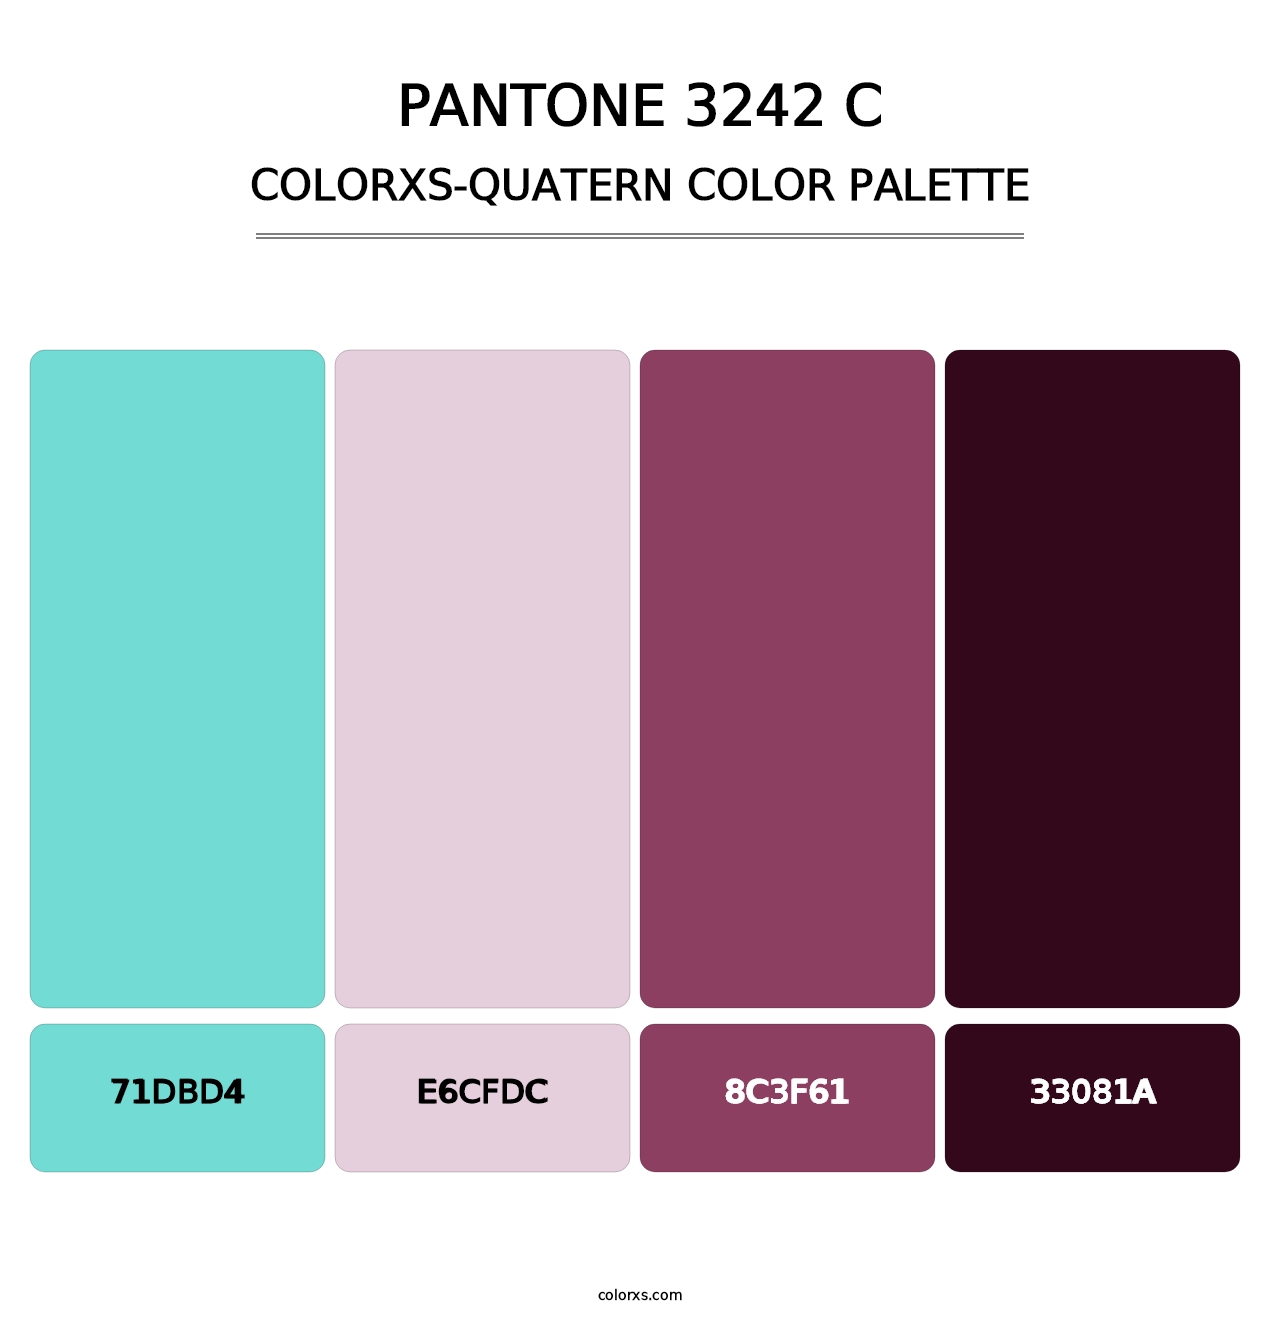 PANTONE 3242 C - Colorxs Quatern Palette